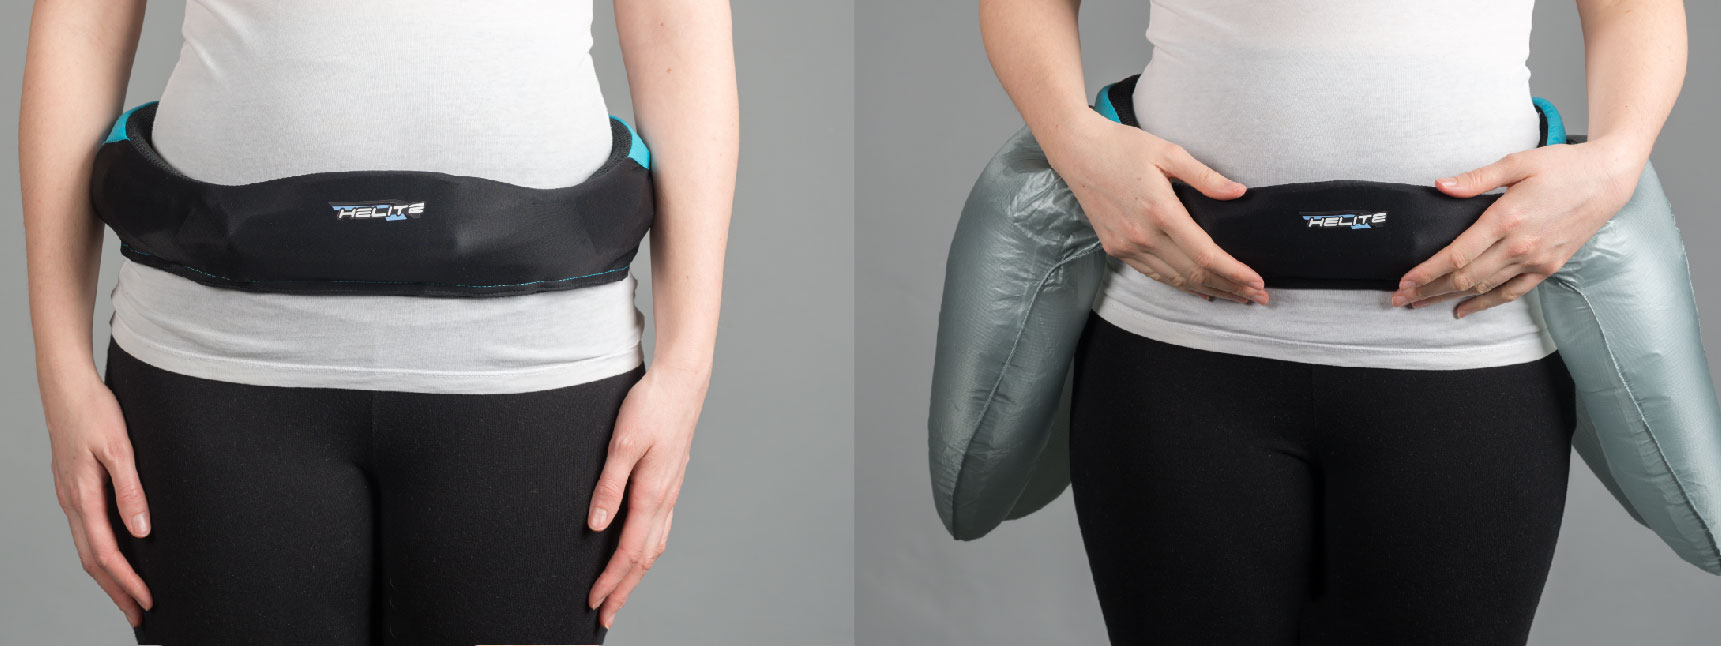 [CES18] Hip’Air - dây đai với túi khí nhằm bảo vệ hông khi té ngã, giá 800 USD